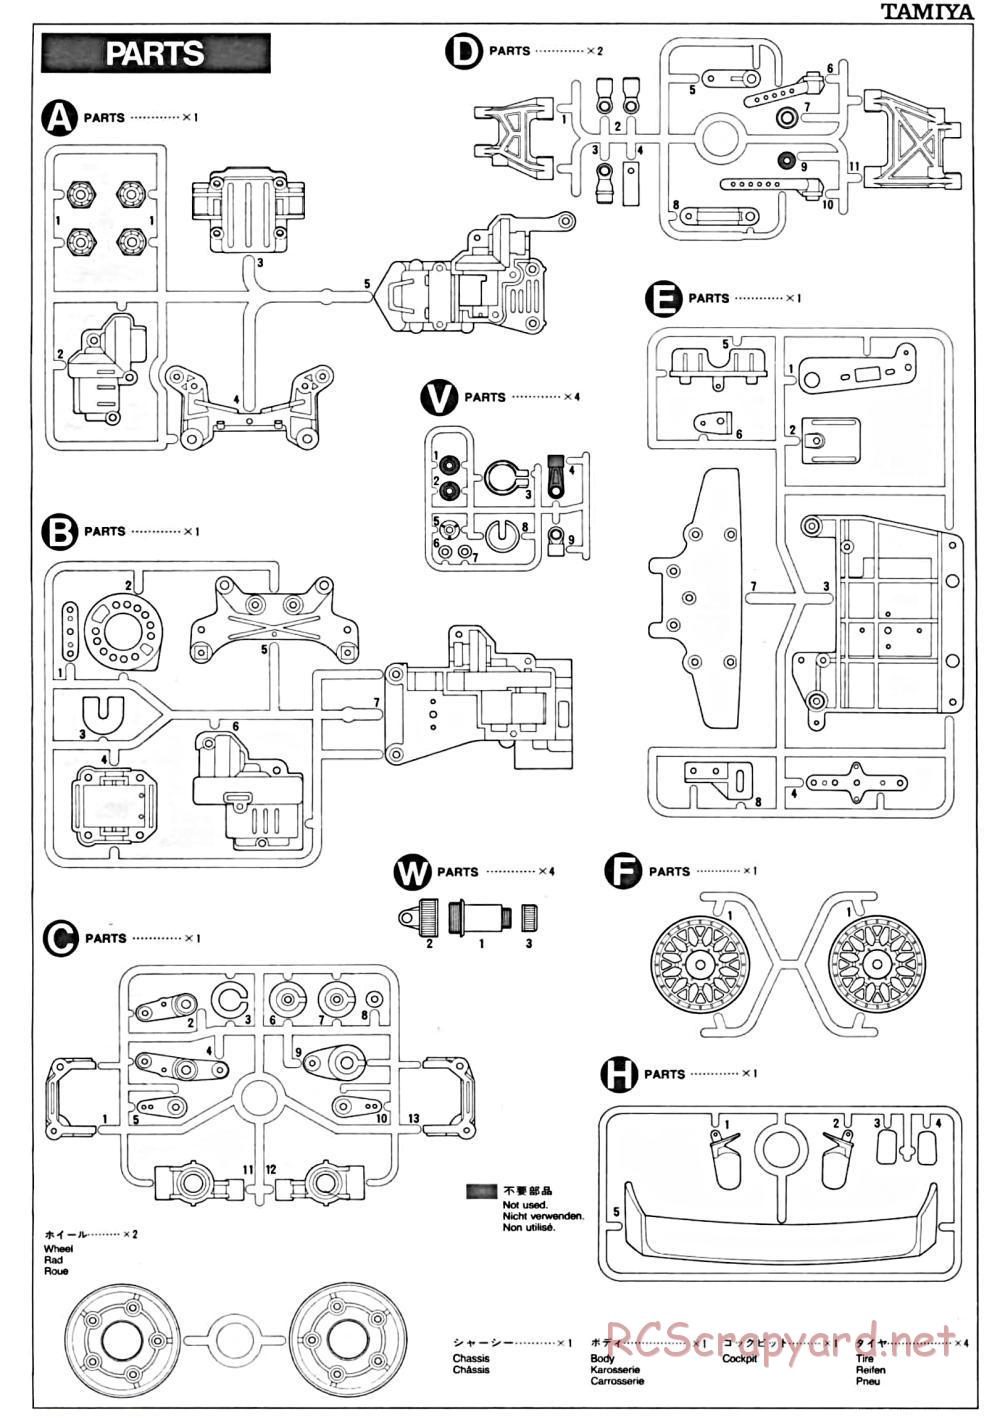 Tamiya - TA-01 Chassis - Manual - Page 15